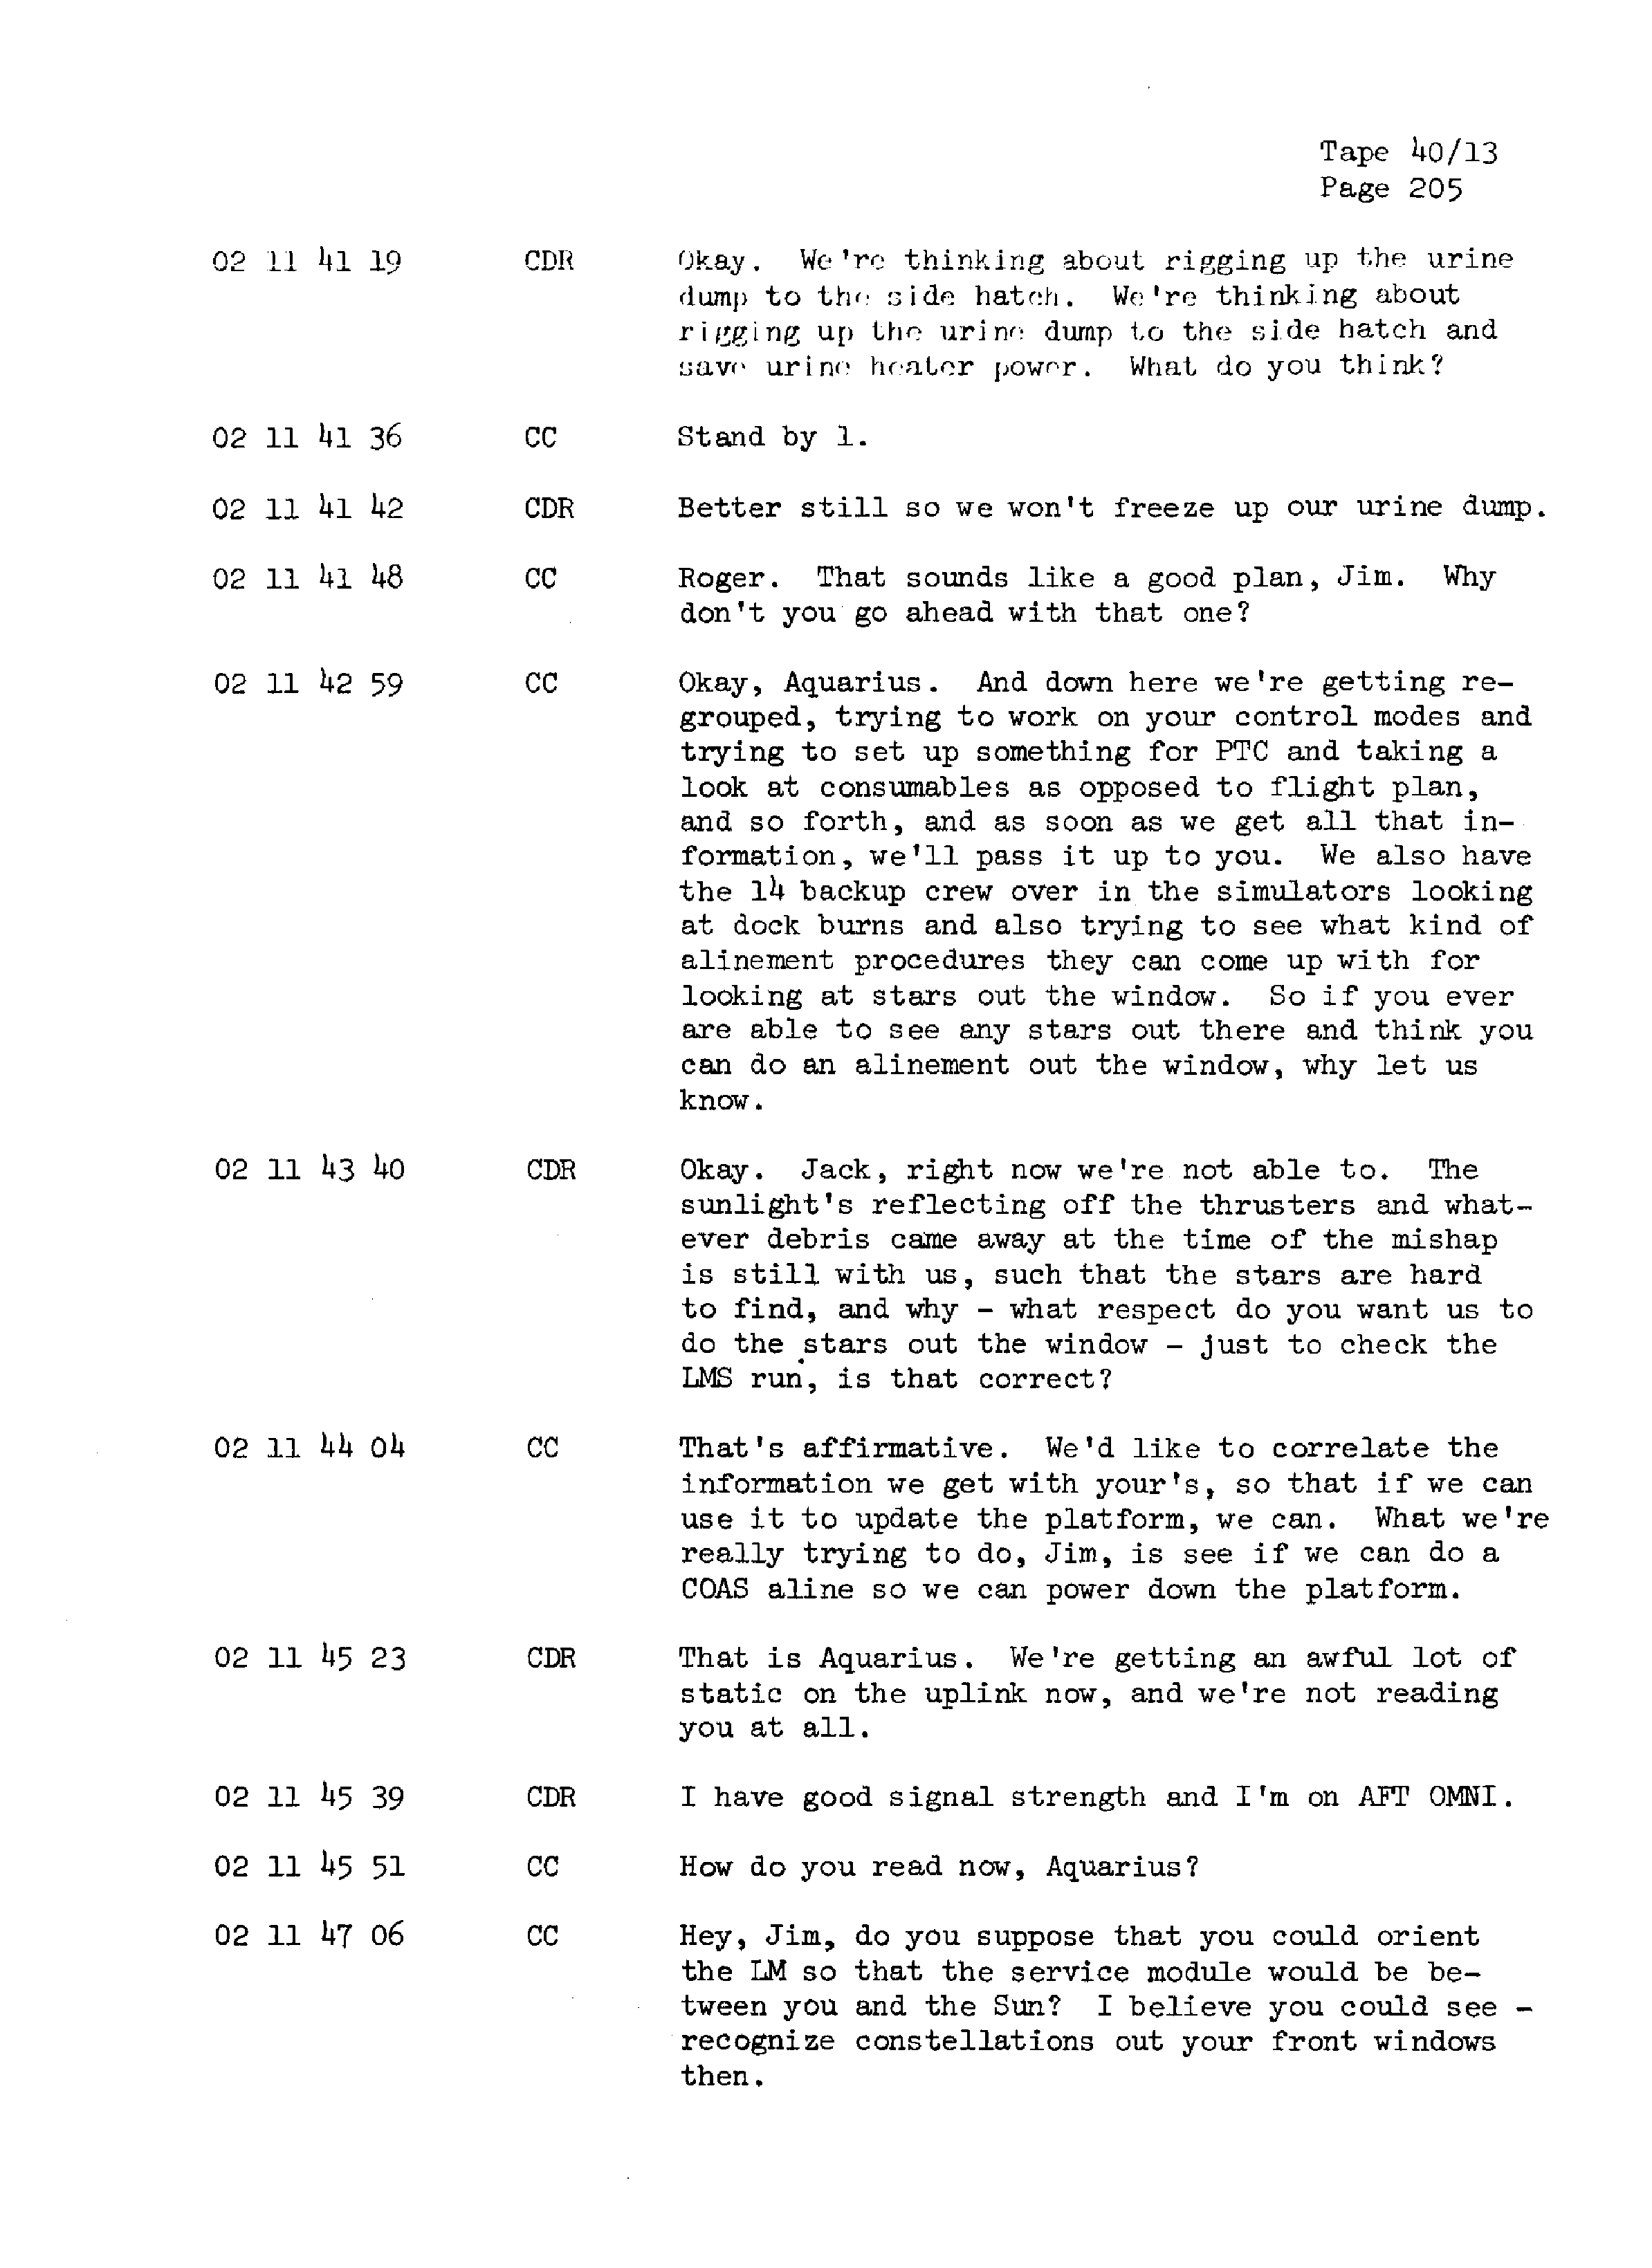 Page 212 of Apollo 13’s original transcript